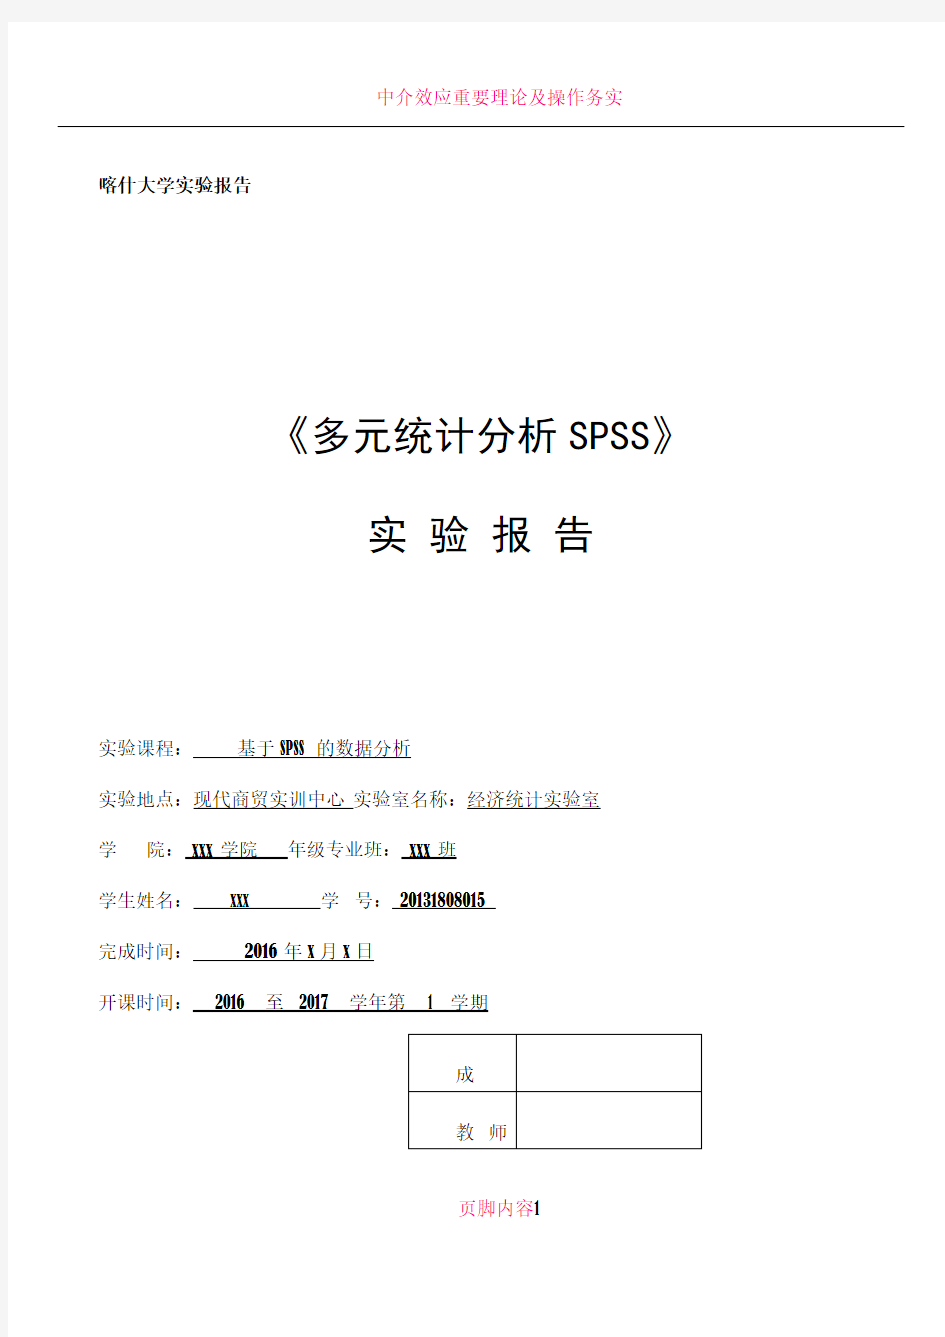 SPSS因子、聚类案例分析报告